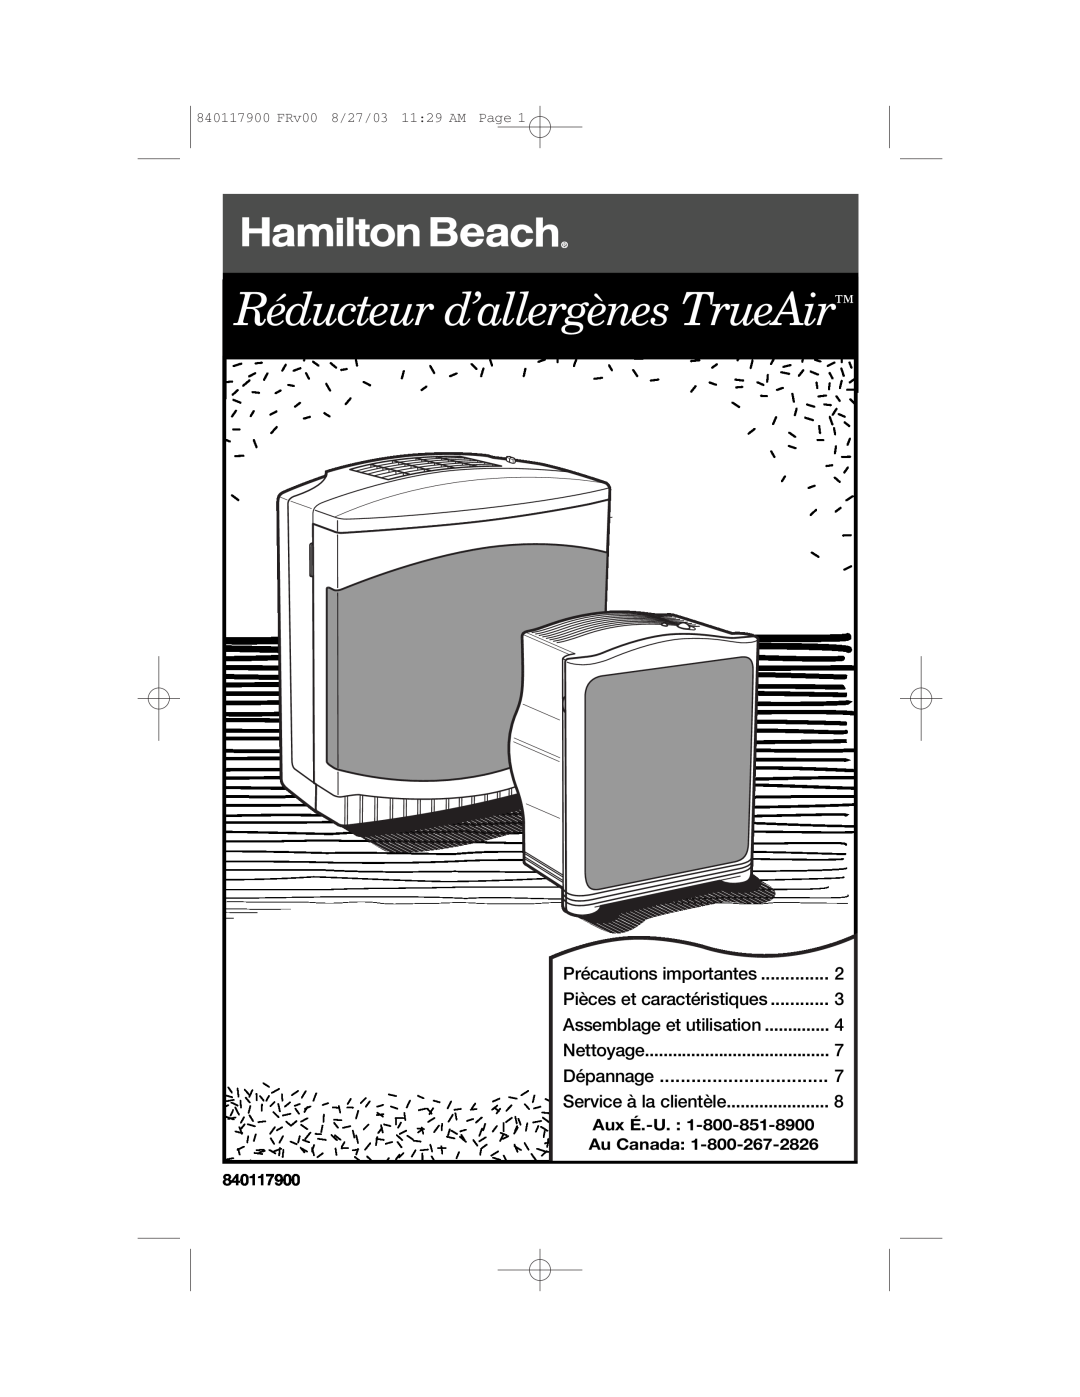 Hamilton Beach 840117900 manual Précautions importantes, Dépannage, Réducteur d’allergènes TrueAir, 8/27/03, 11 29 AM, Page 